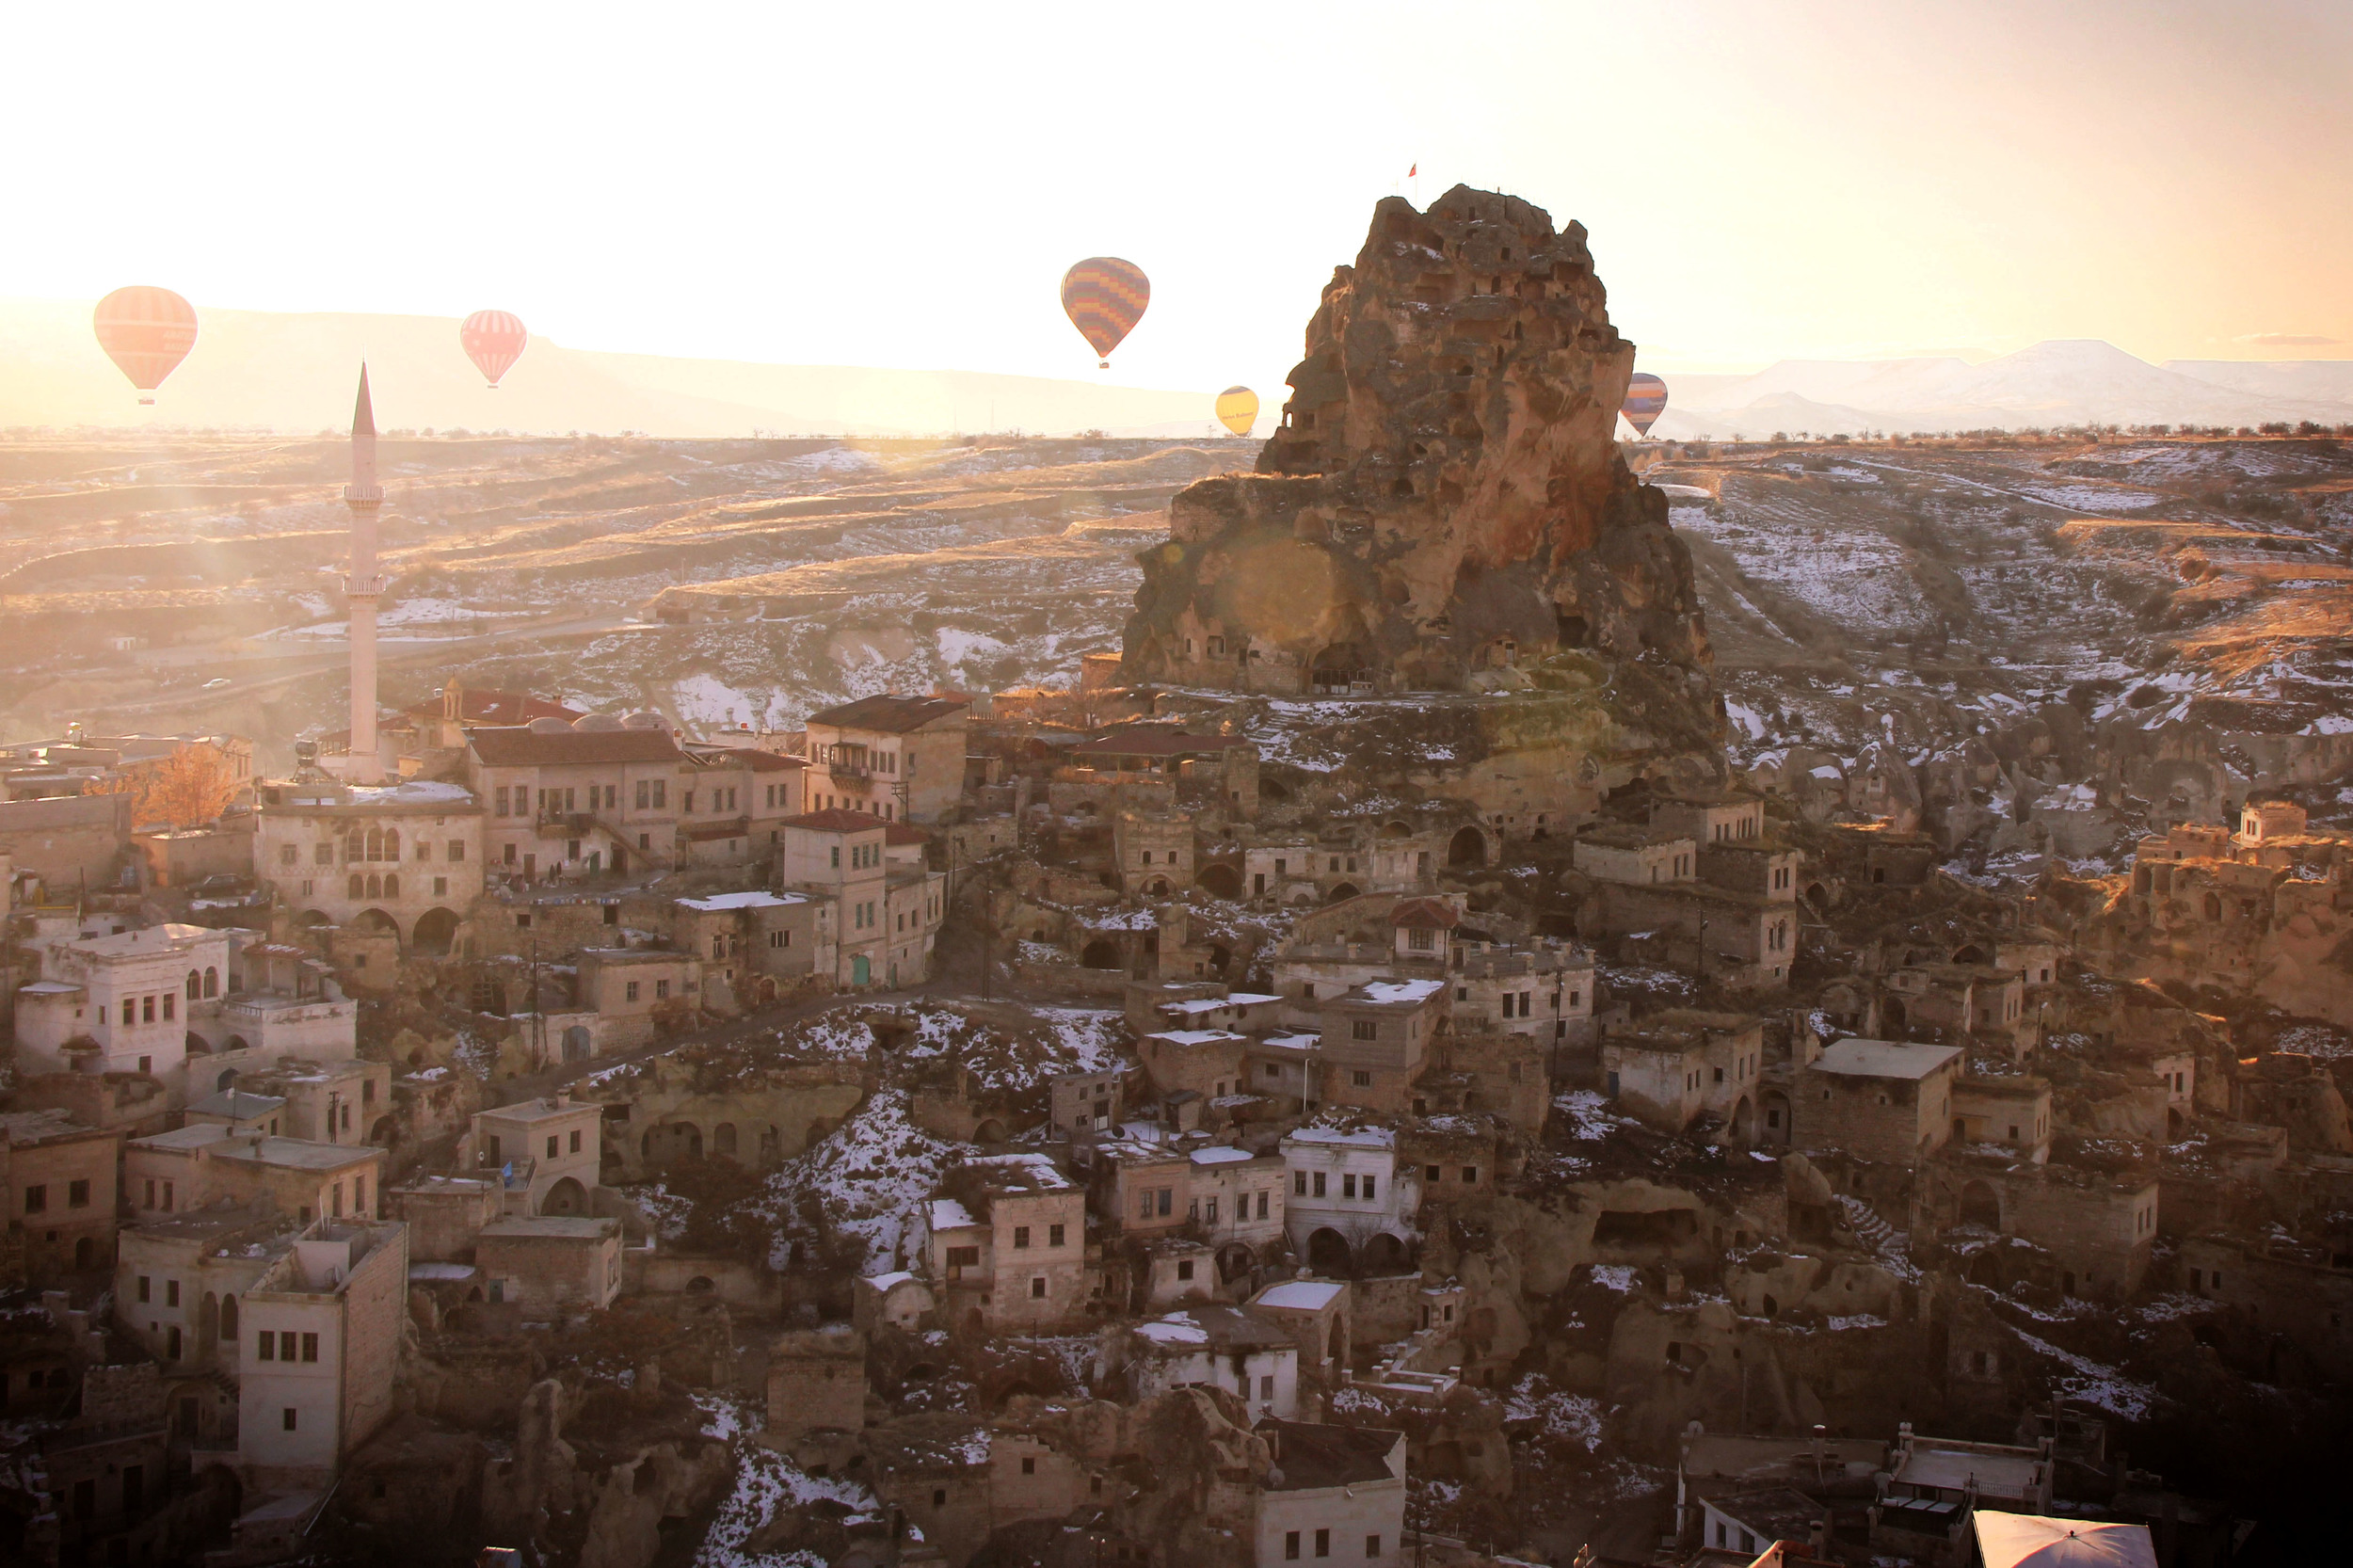 Hot air balloons over Cappadocia, Turkey